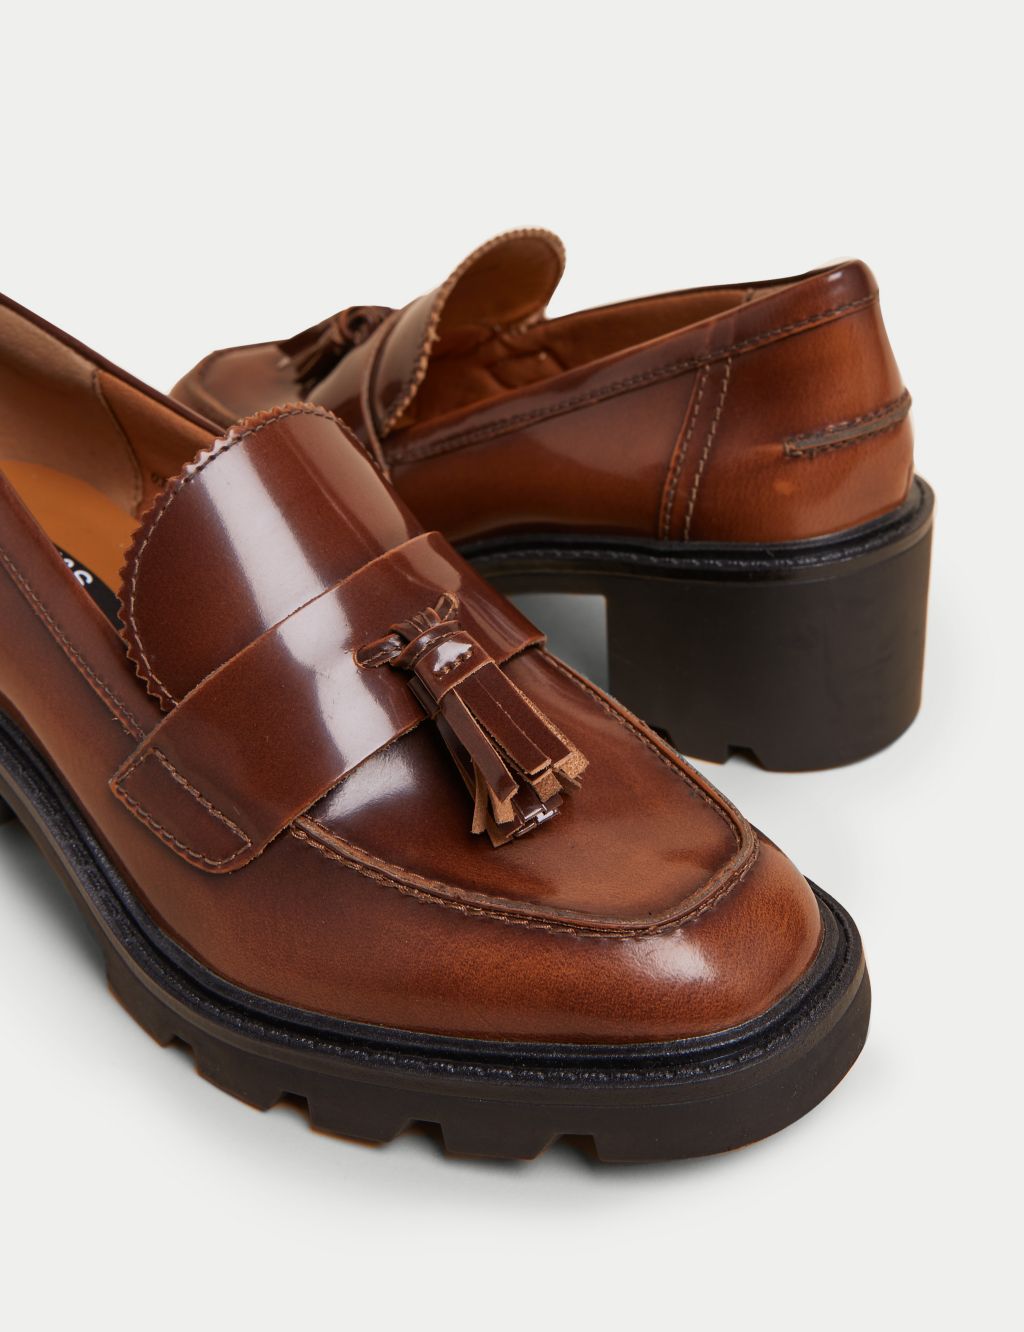 Leather Tassel Block Heel Loafers image 1